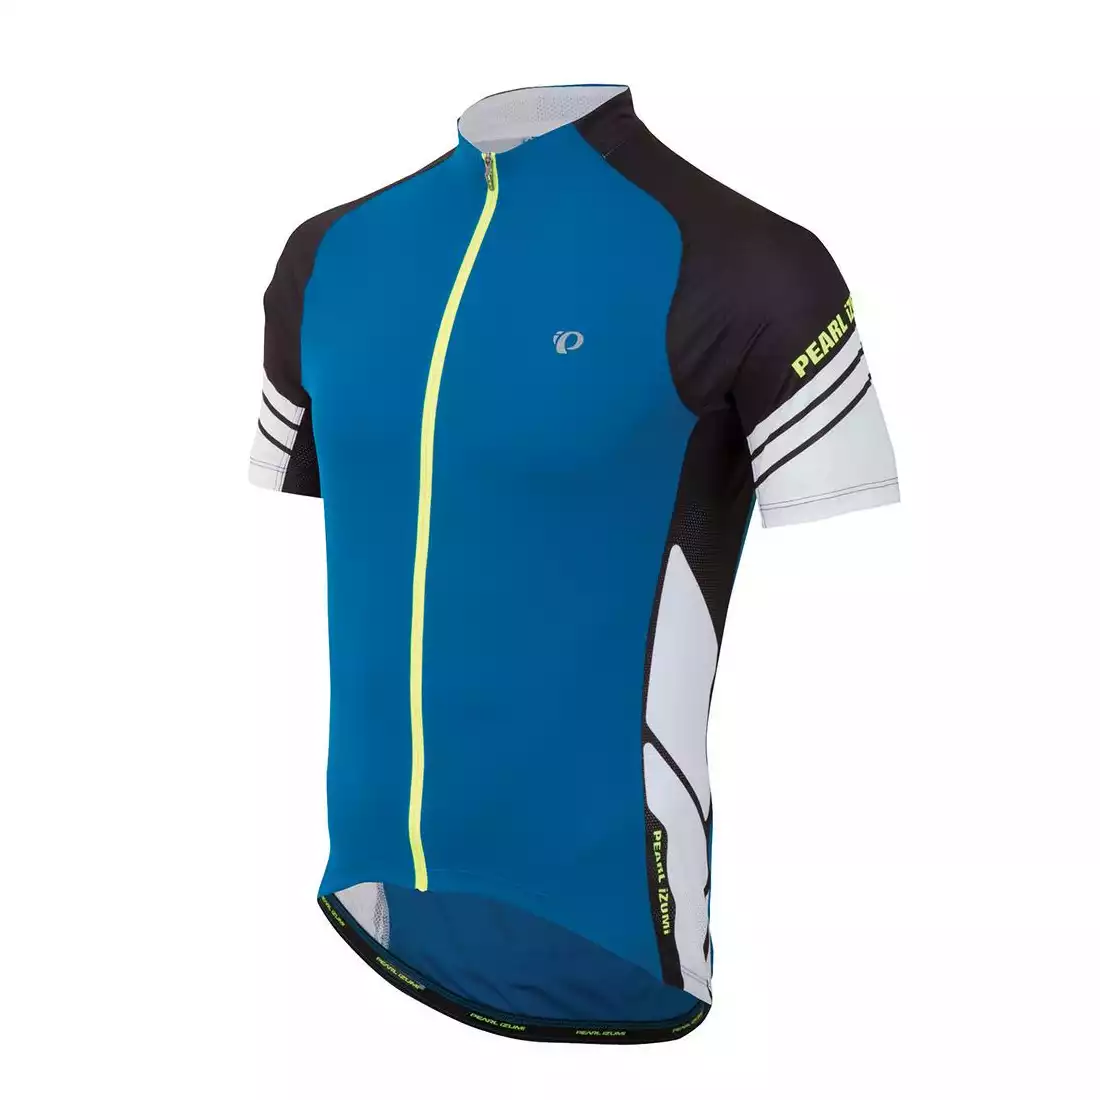 PEARL IZUMI - ELITE 11121301-4EM - lekka koszulka rowerowa, kolor: Niebiesko-czarny